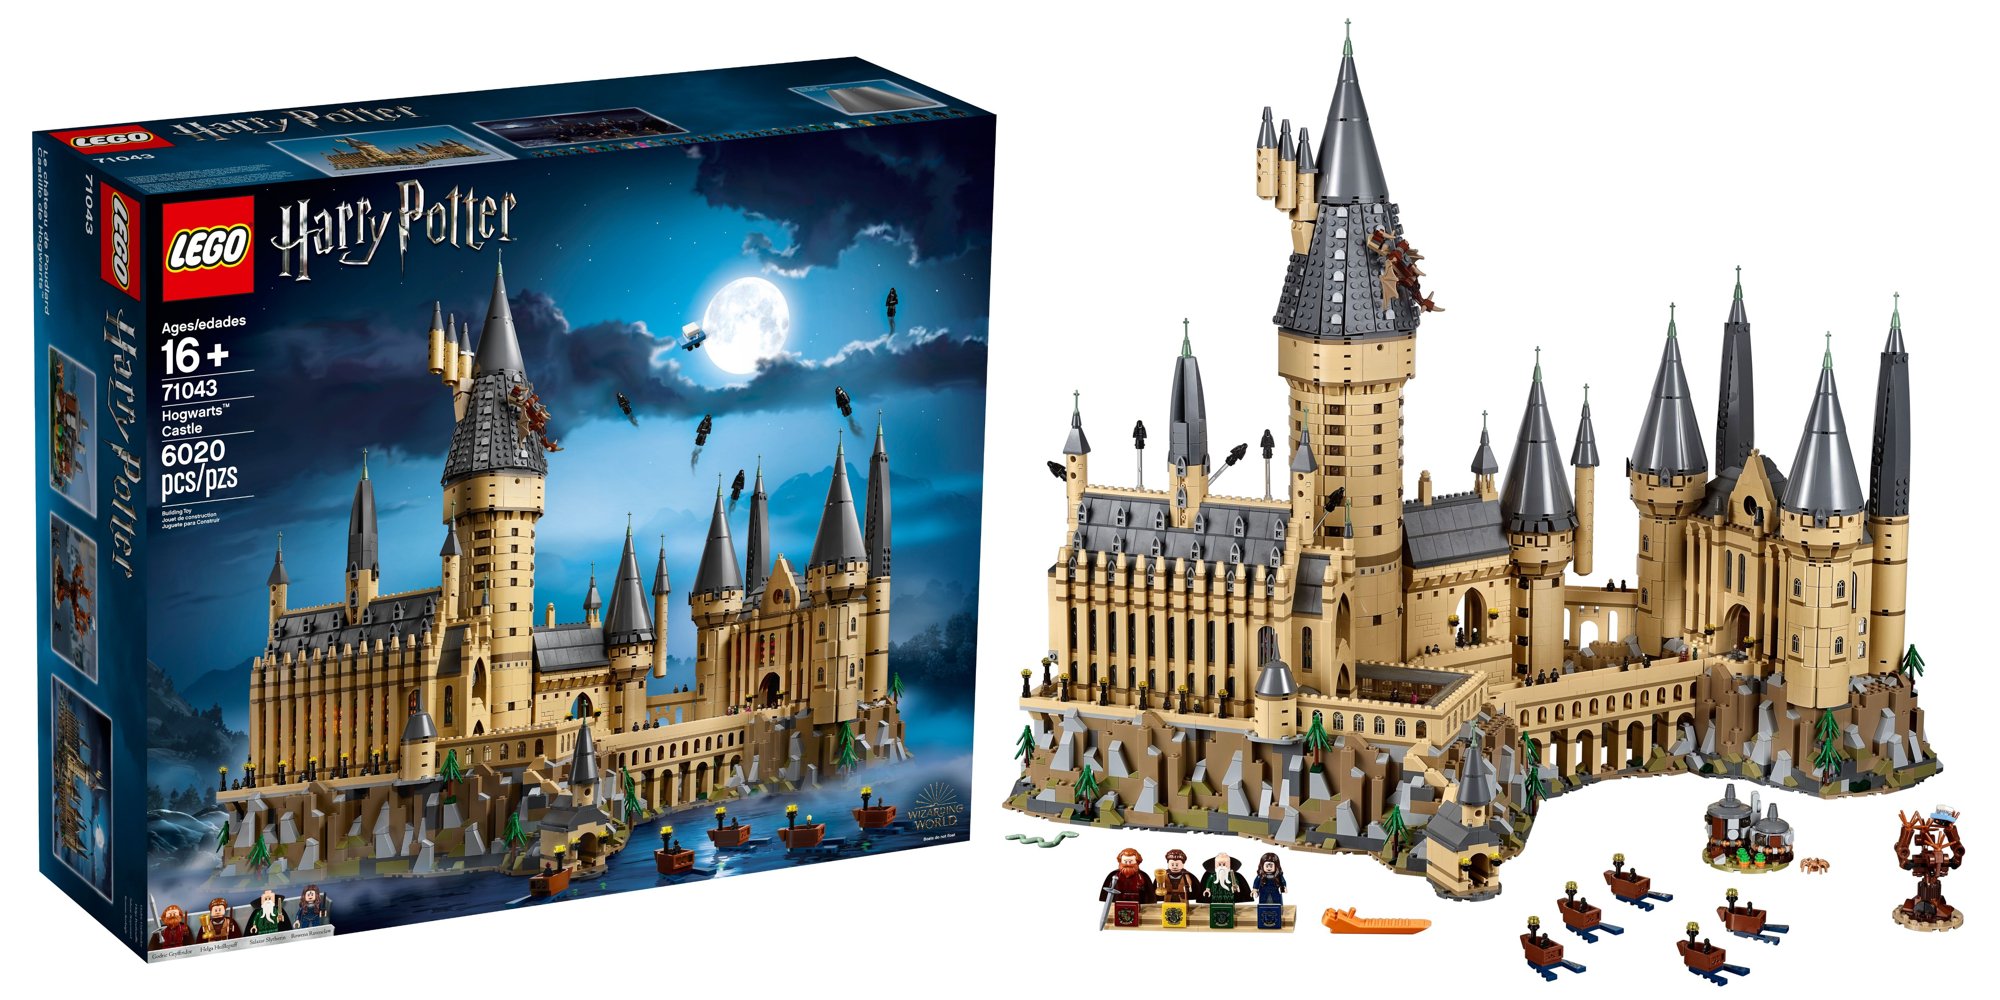 Hardest LEGO Sets to Build: 71043 Hogwarts Castle